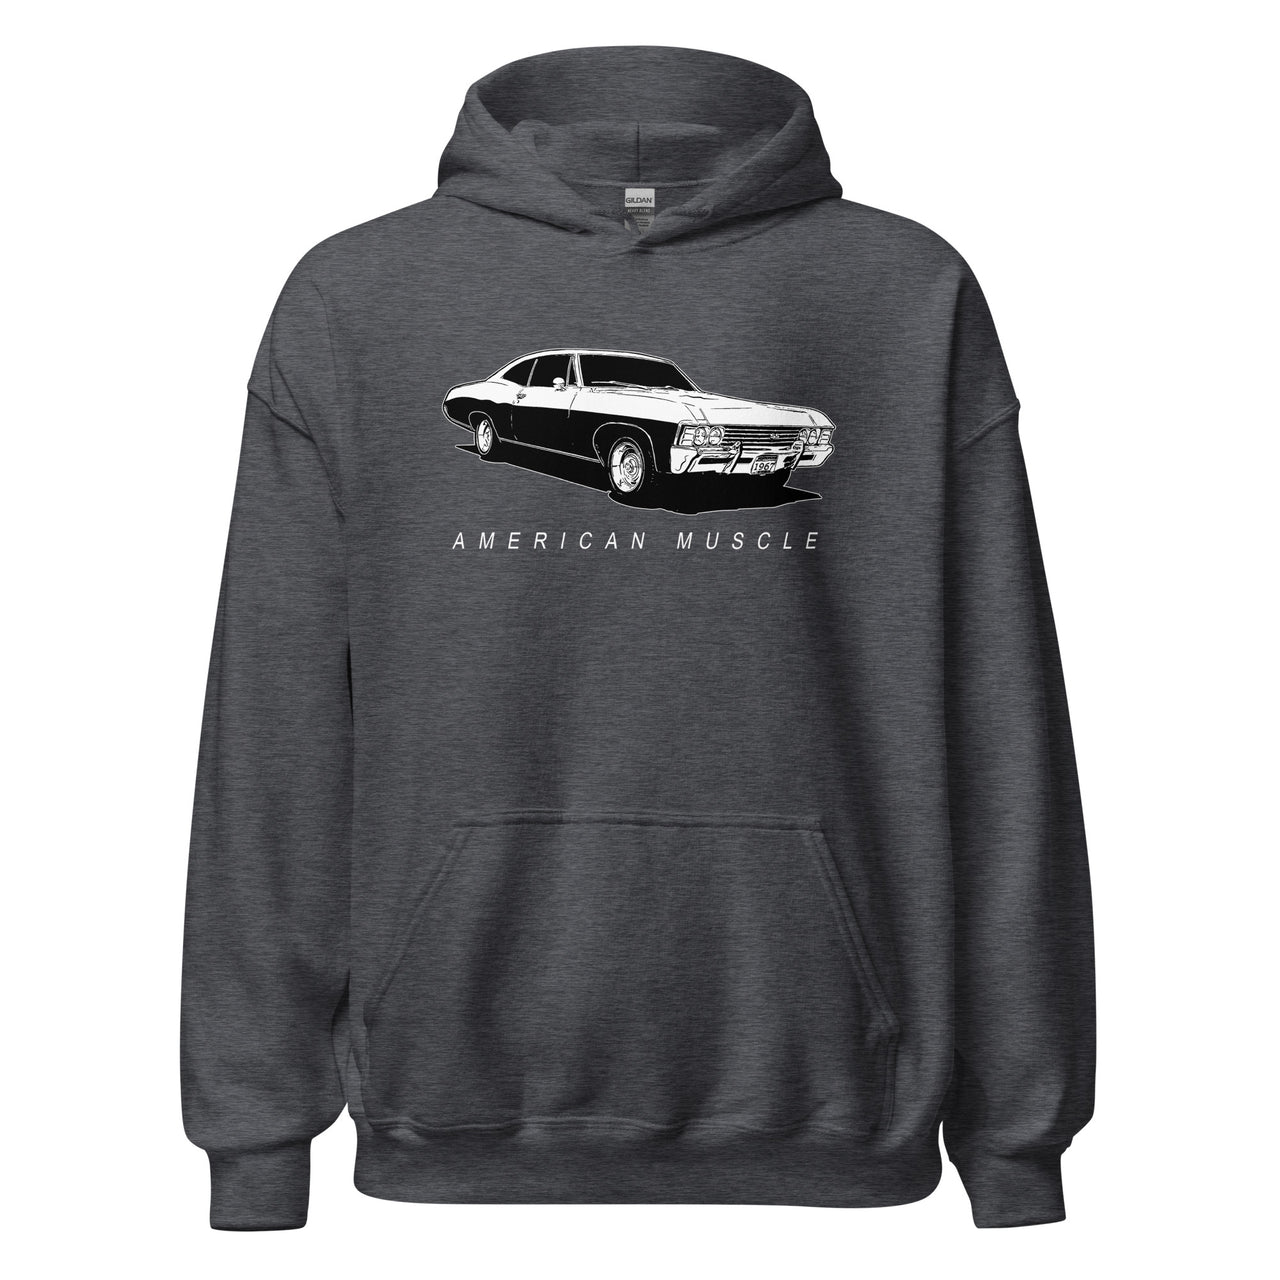 1967 Impala Hoodie American Muscle Car Sweatshirt in gray